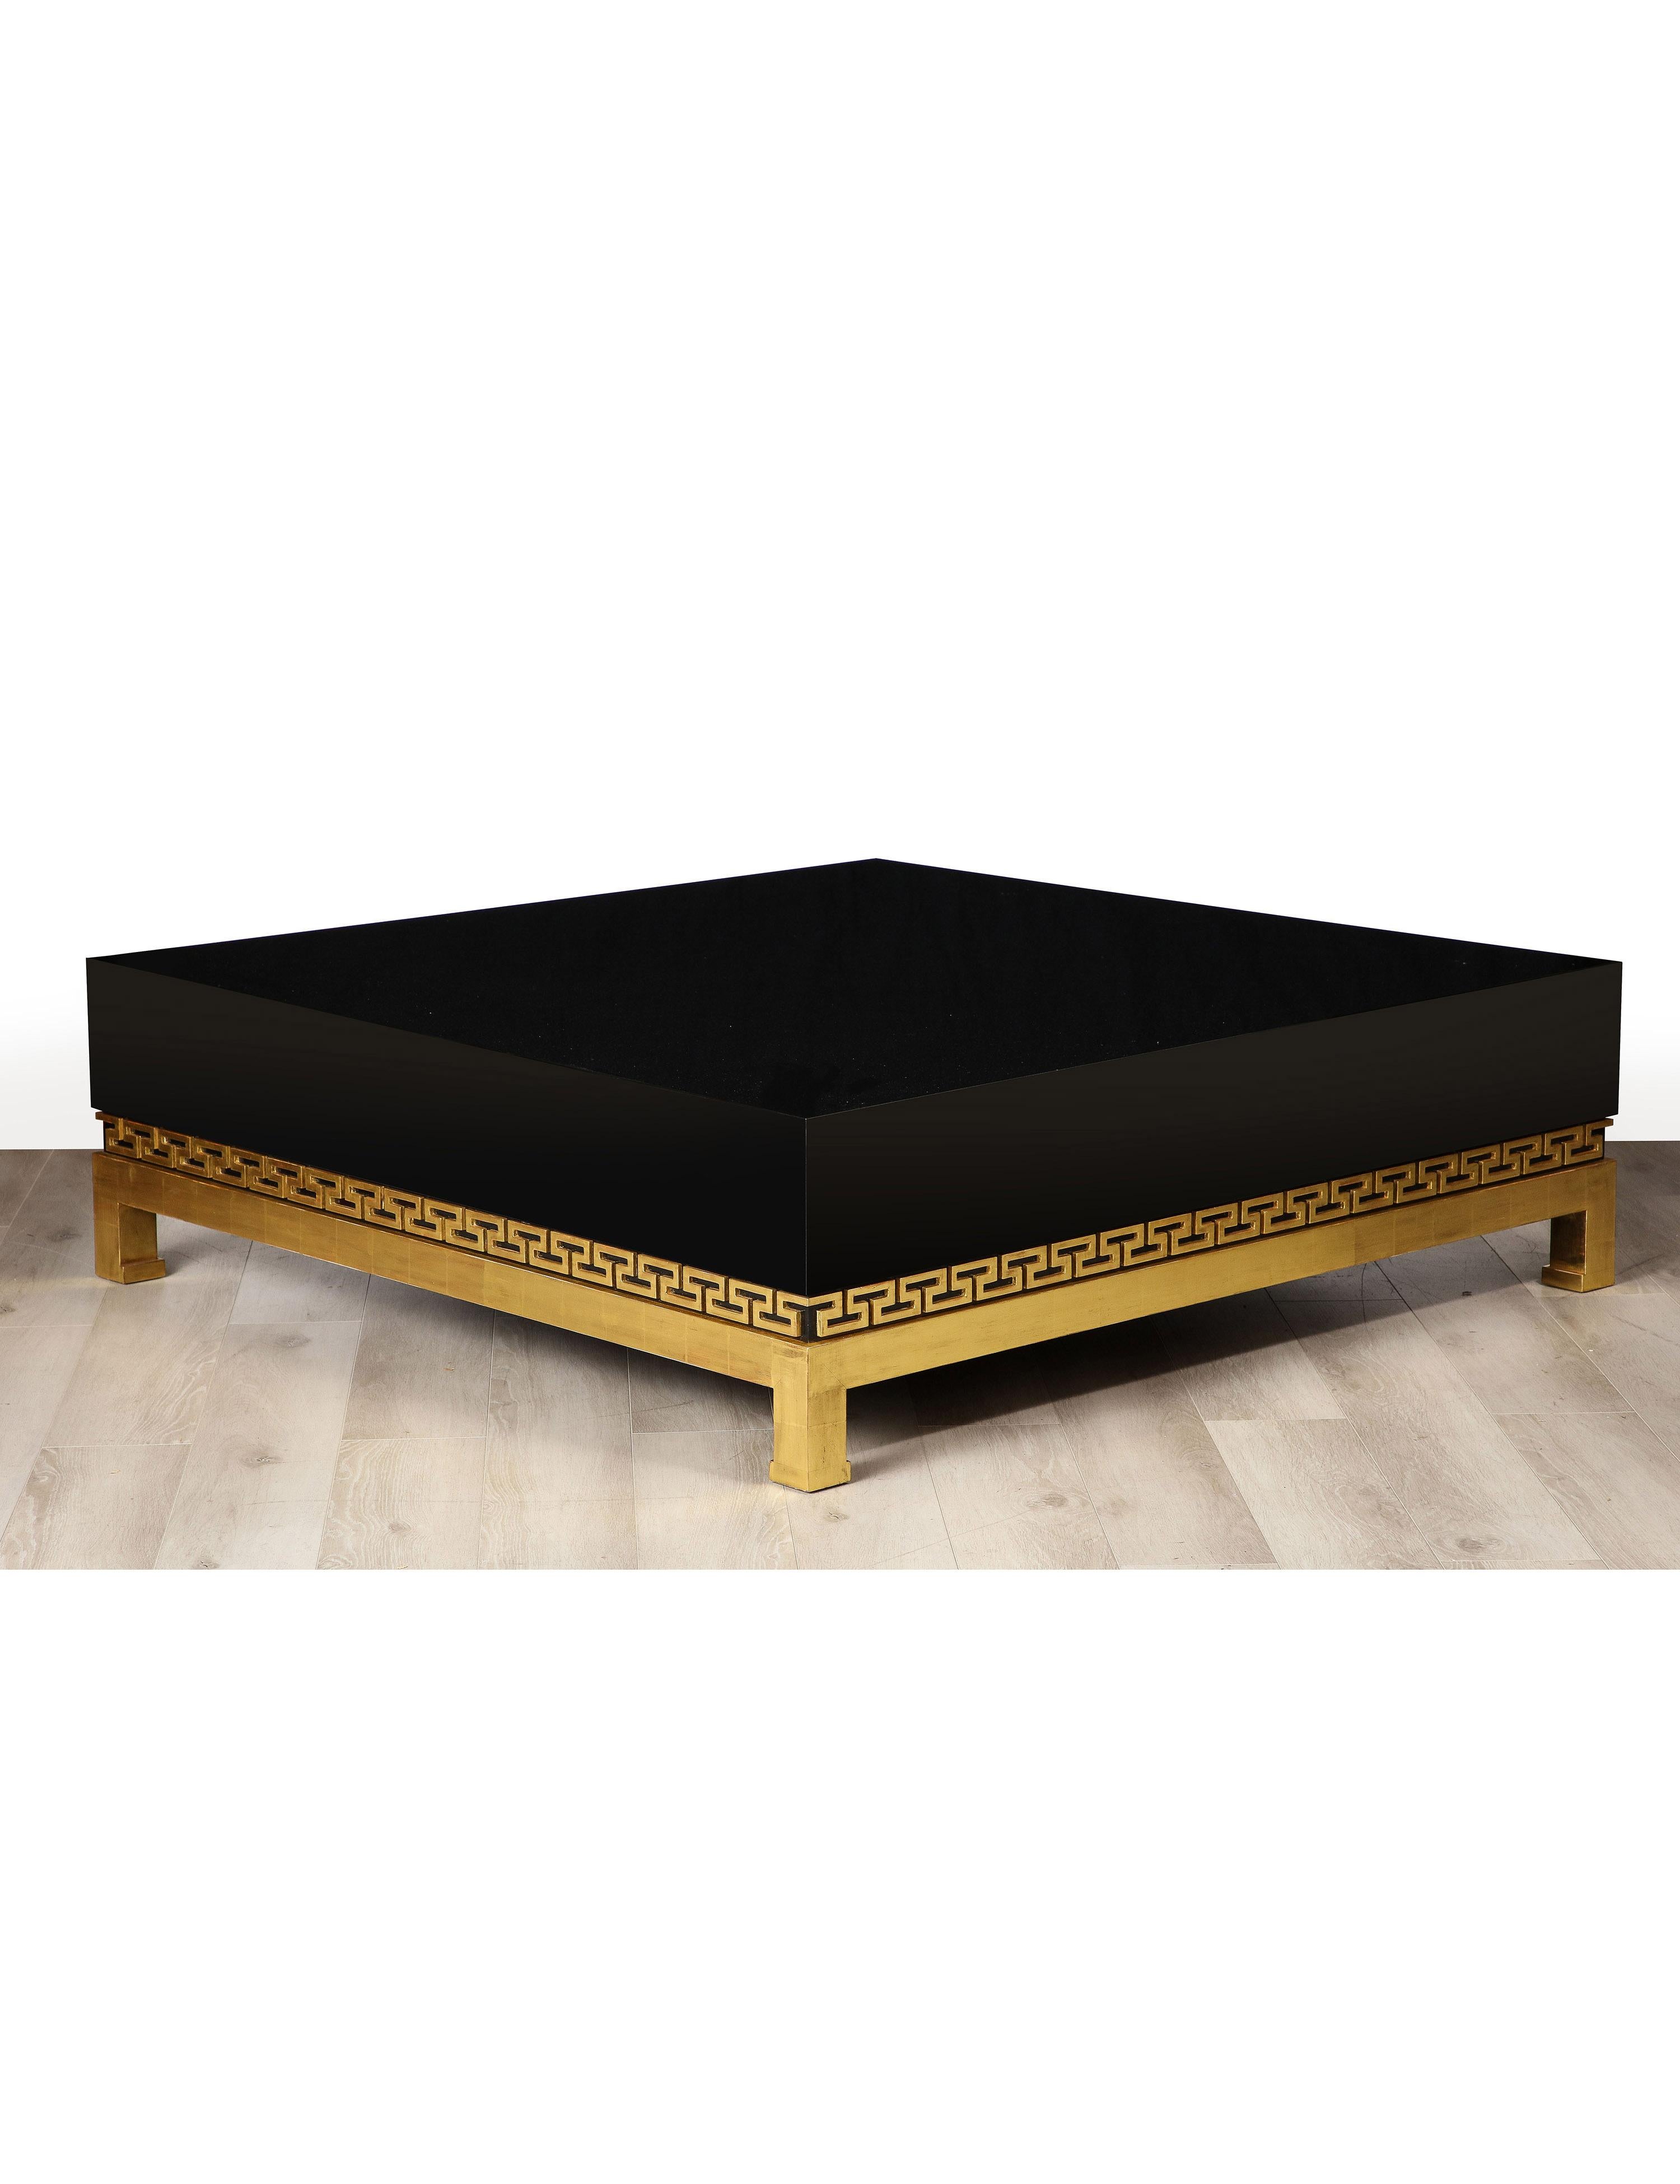 Table basse néoclassique de grande taille en bois laqué et doré avec un plateau en laque noire polie et des détails de clés grecques en bois doré sur une base en bois doré.